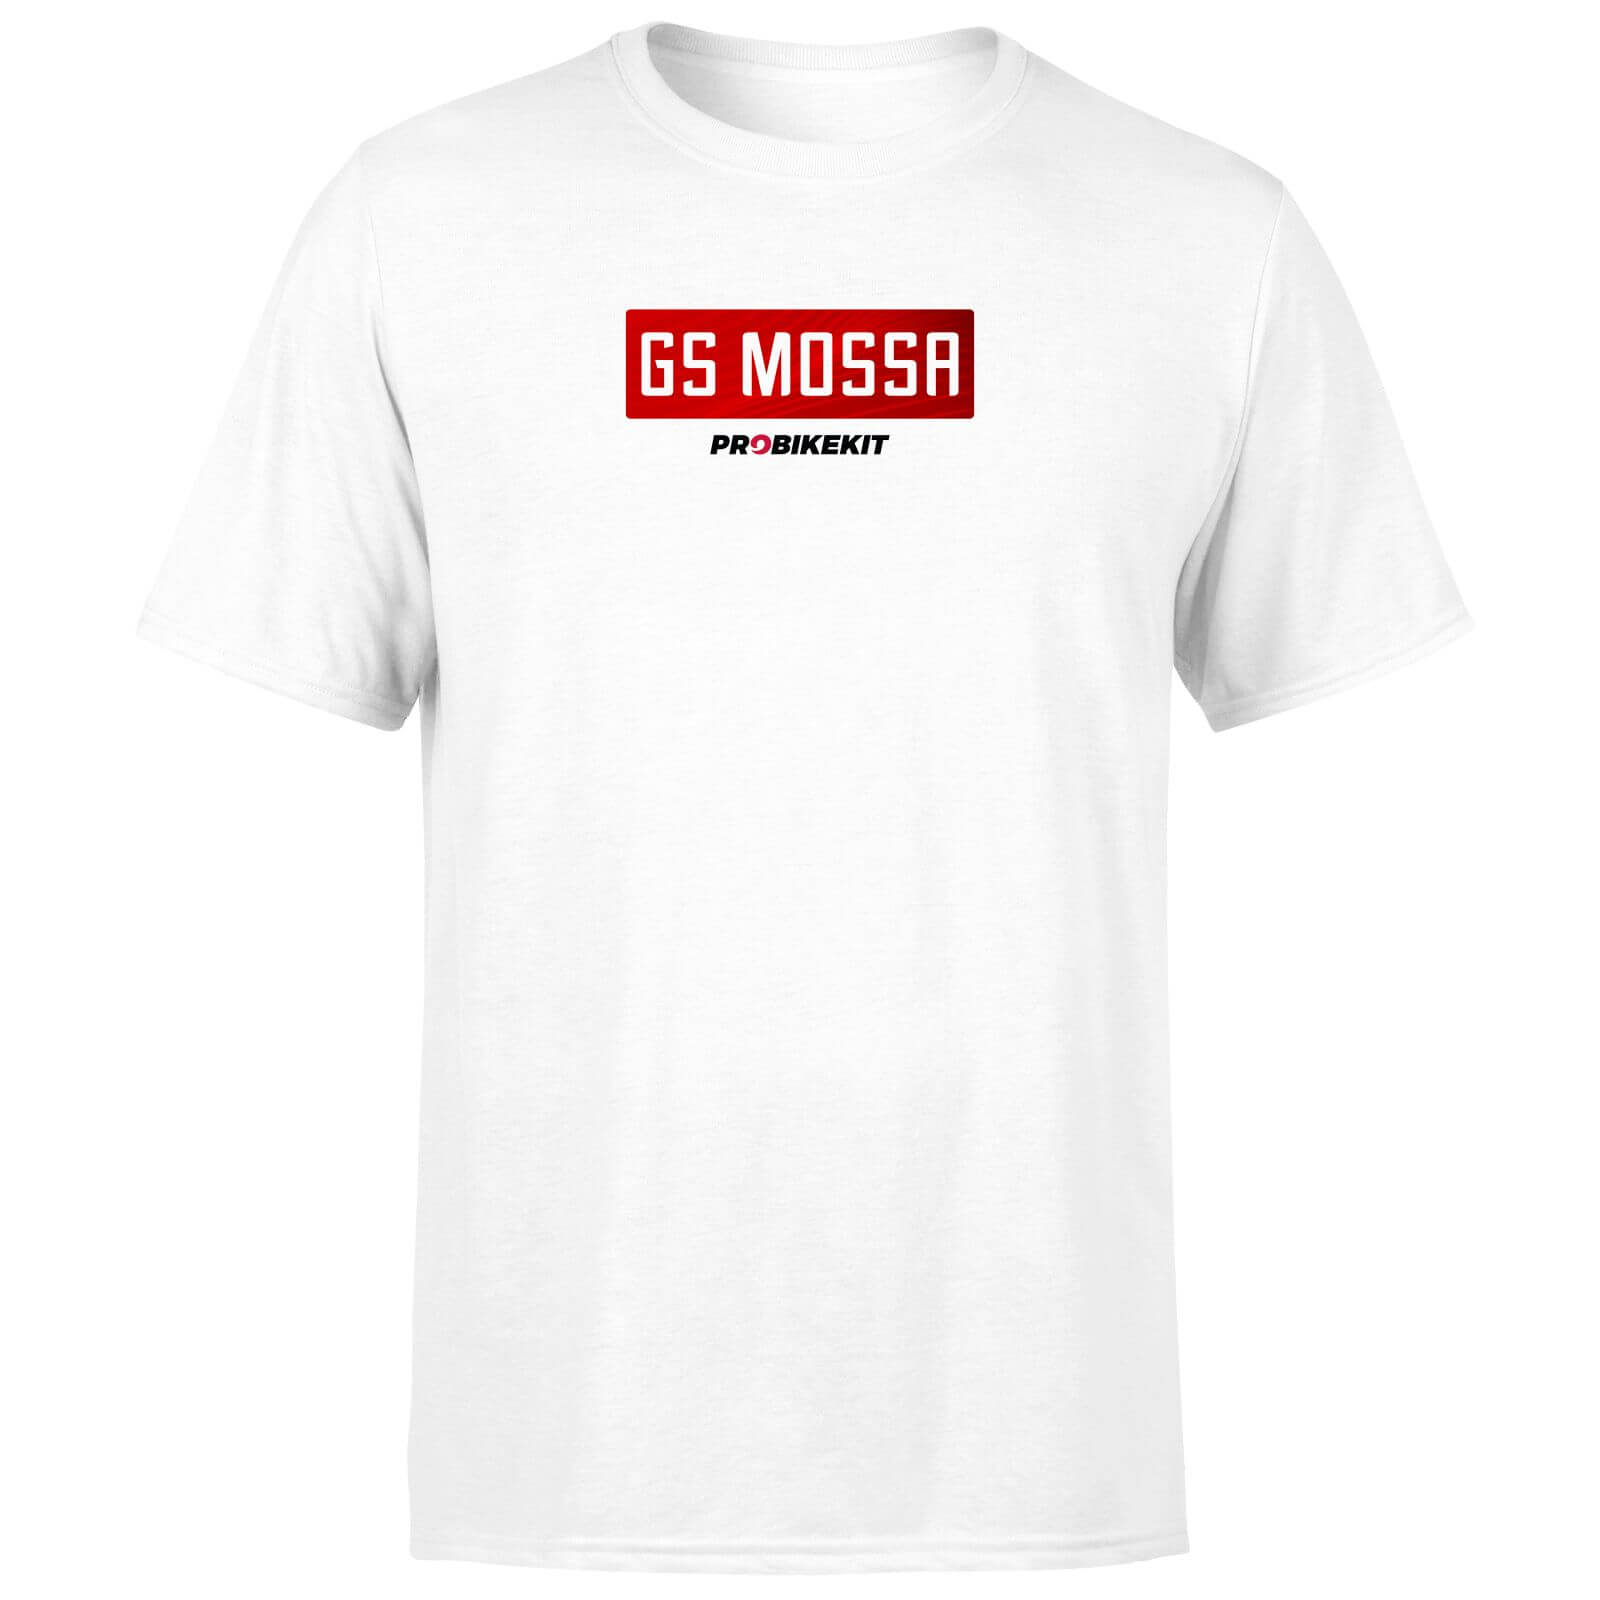 PBK GS Mossa Boxed Chest Logo Men's T-Shirt - White - XL - White